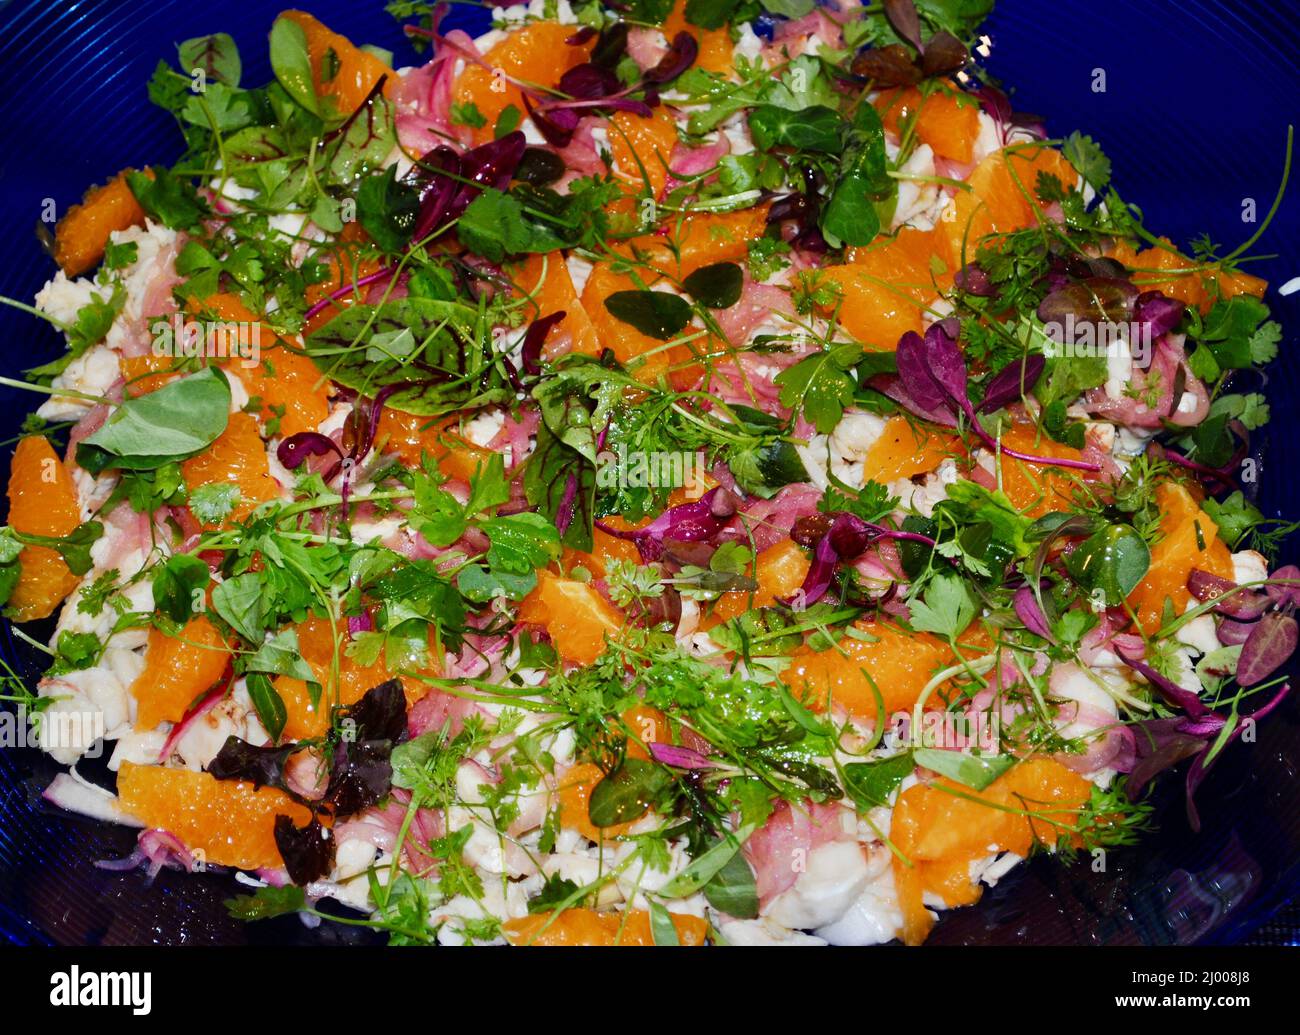 Farbenfroher Salat mit Traubenfrüchten und geräuchertem Lachs Stockfoto